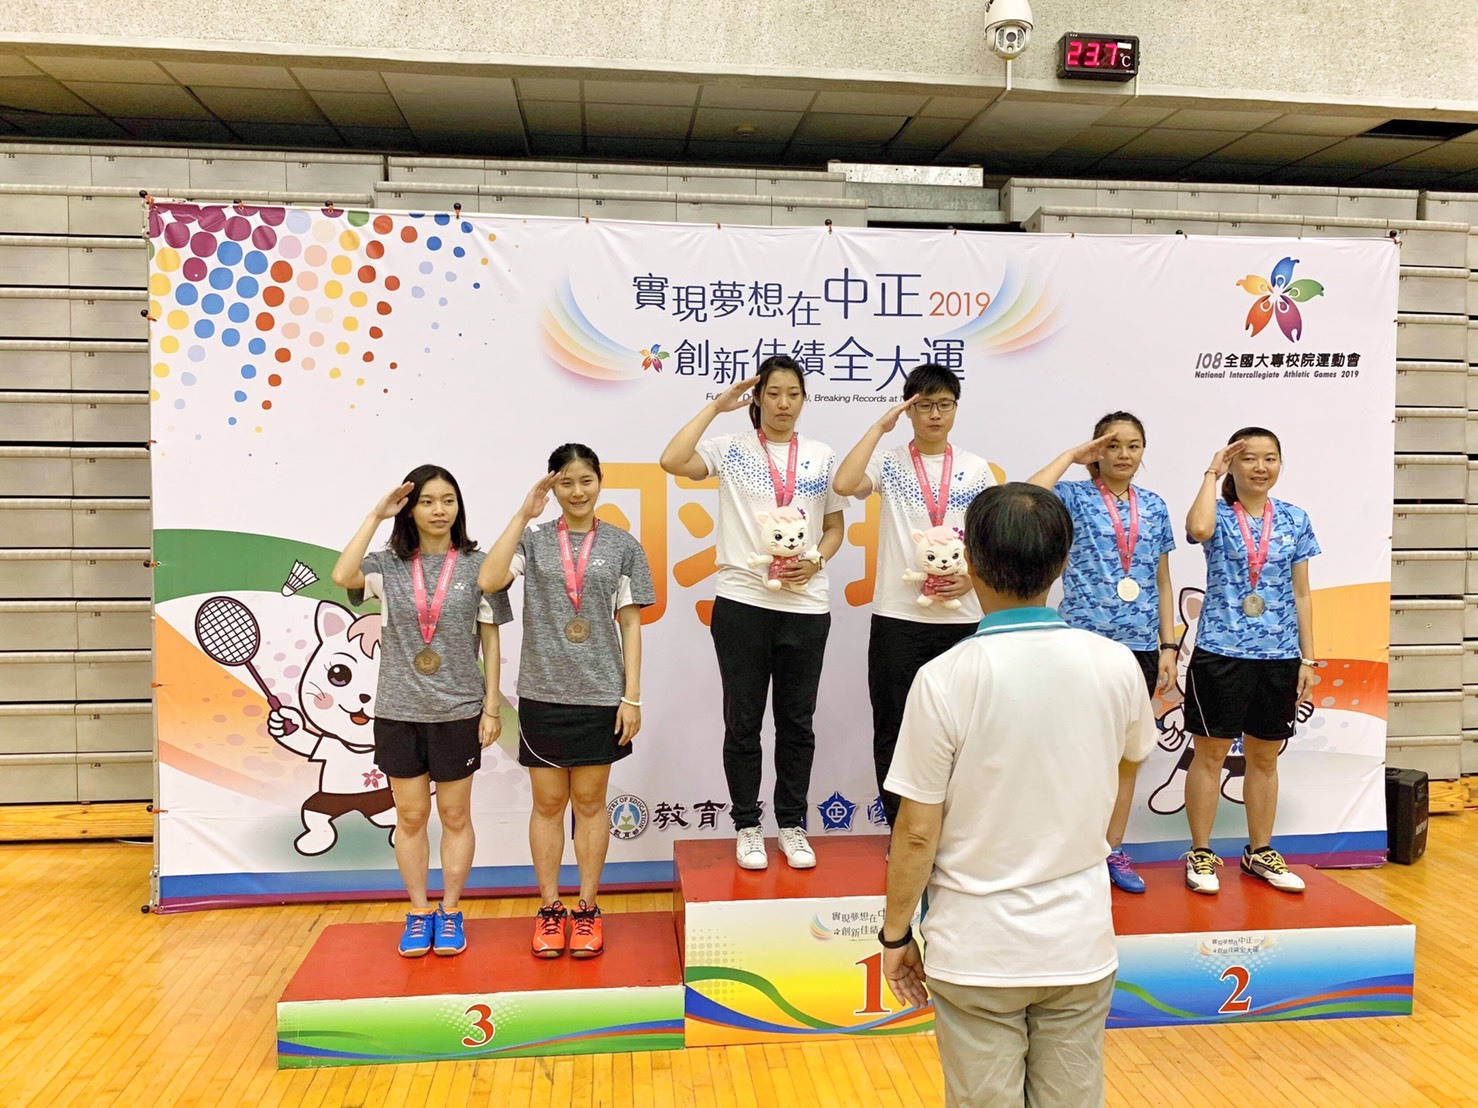 翁子凌(左二)獲2019全國全國大專校院運動會羽球女雙第三名